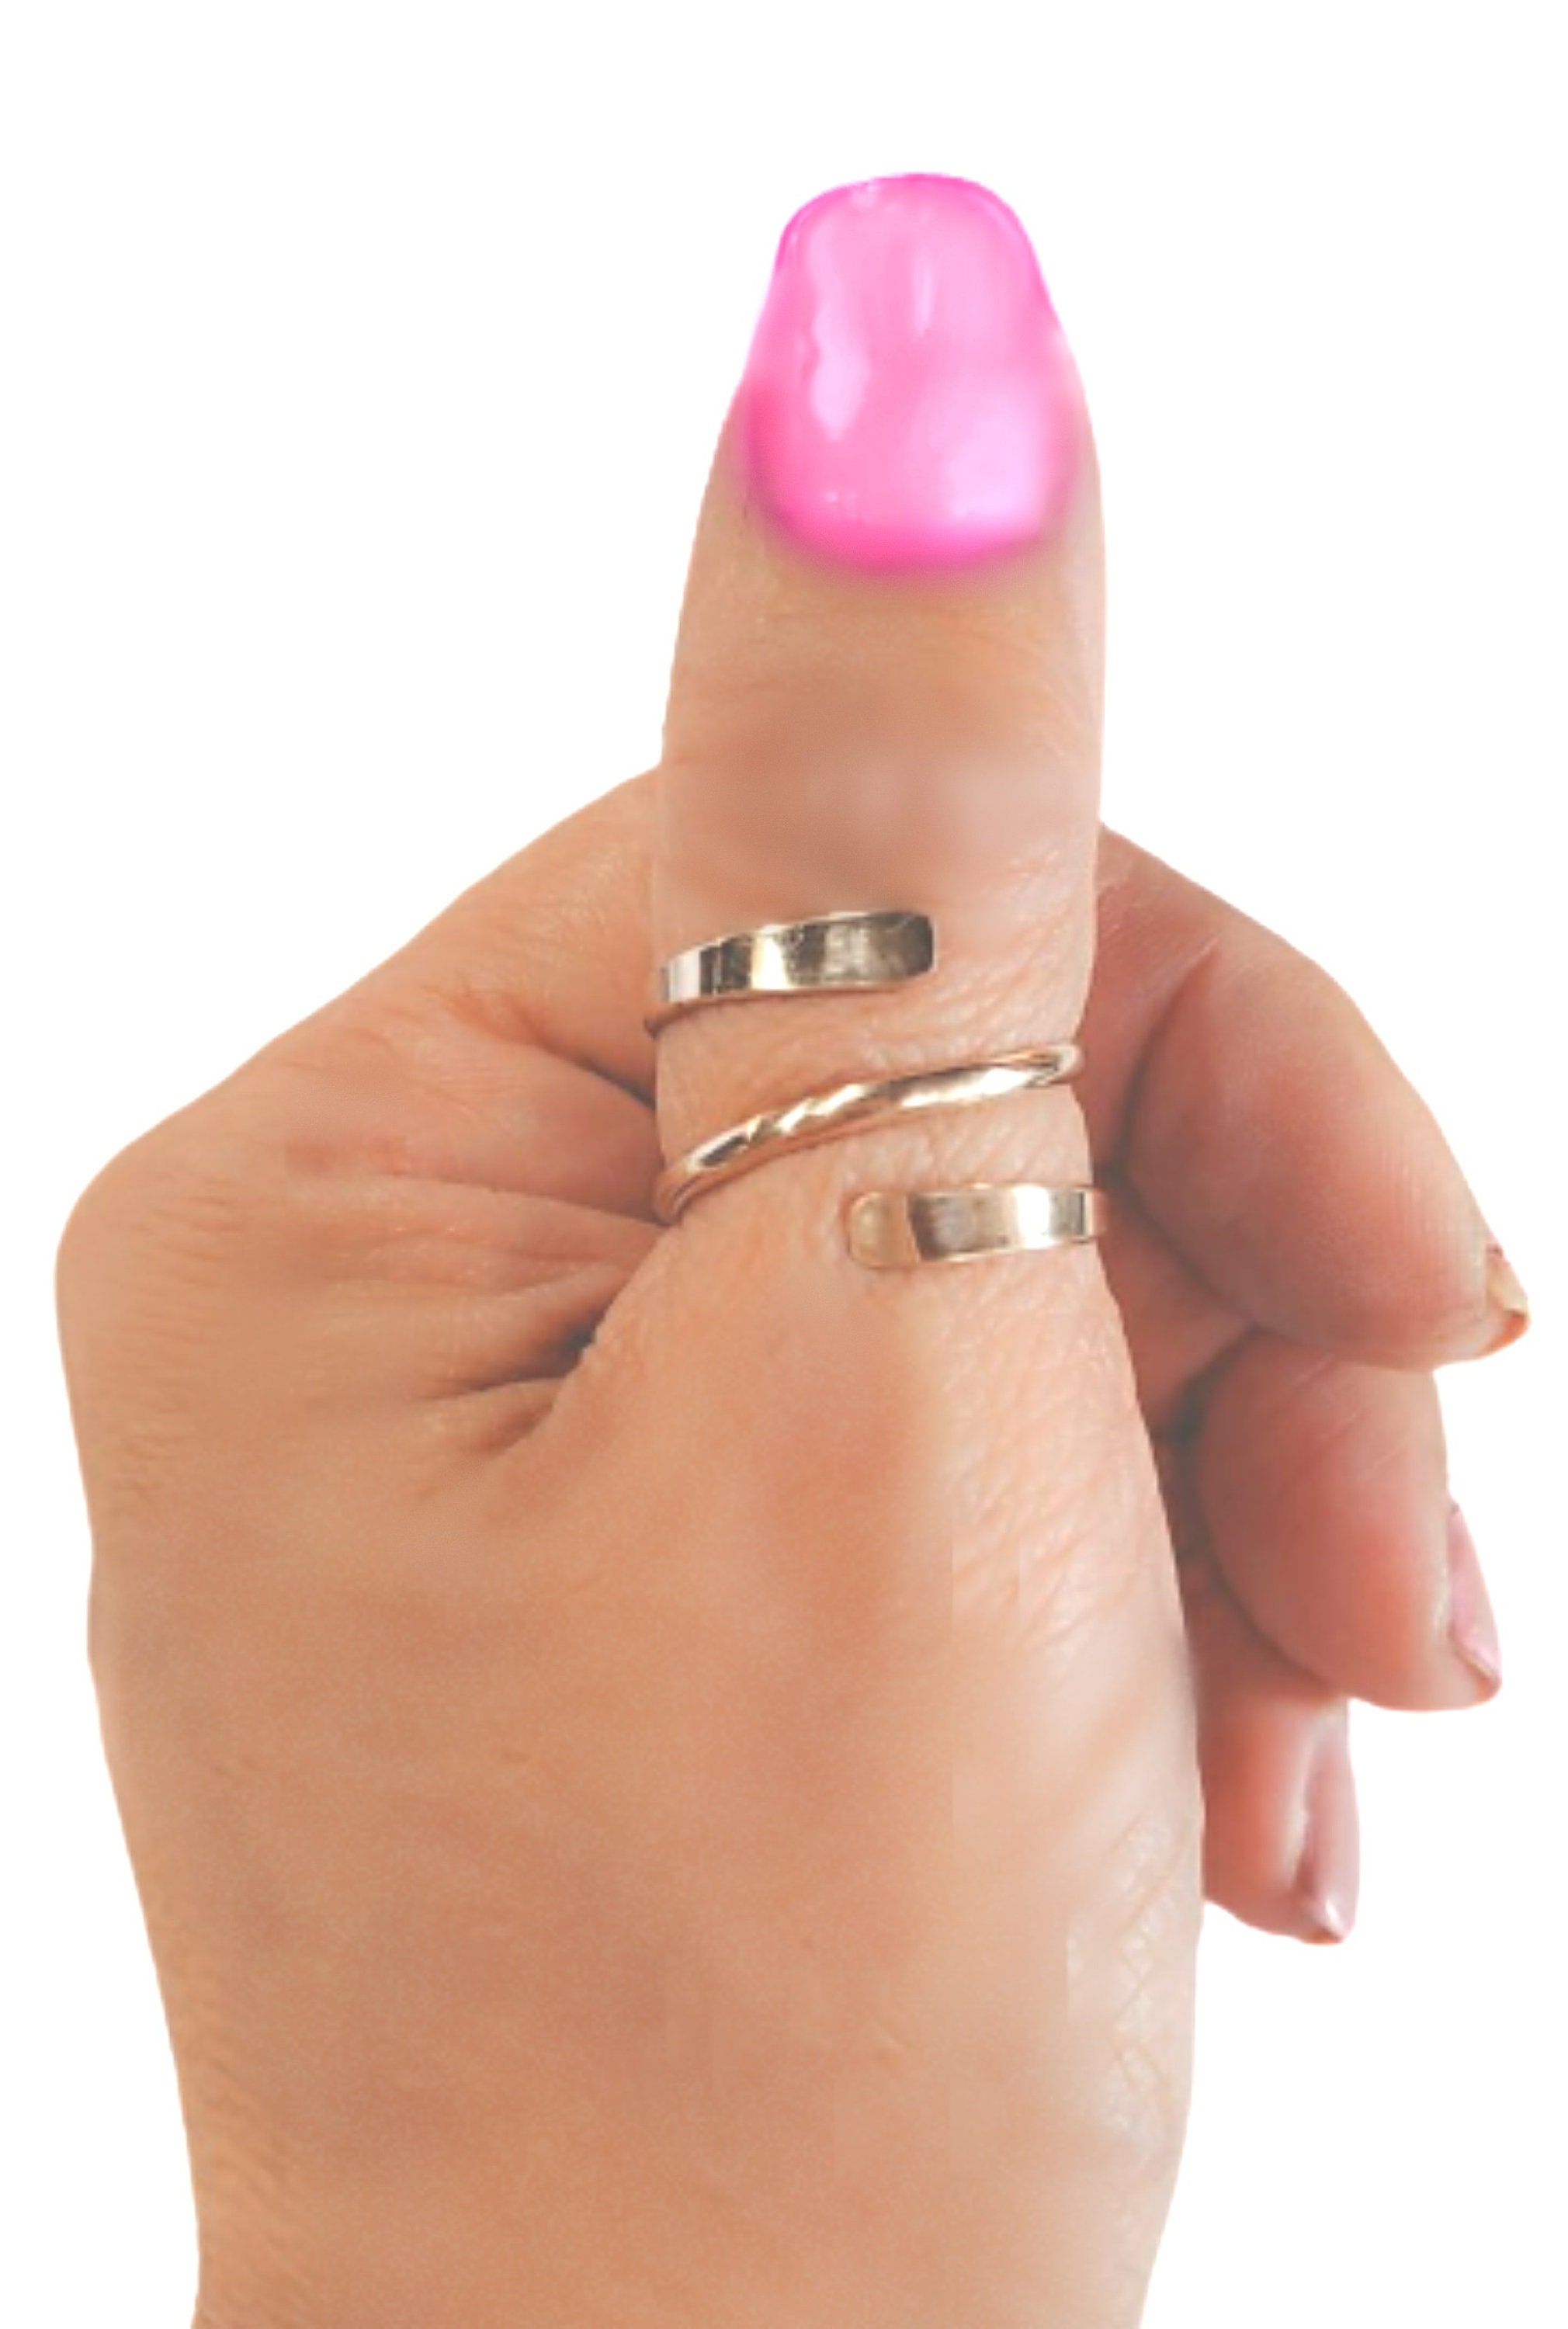 Adjustable Gold Thumb Ring Elegant Swirl Design for Women - Etsy